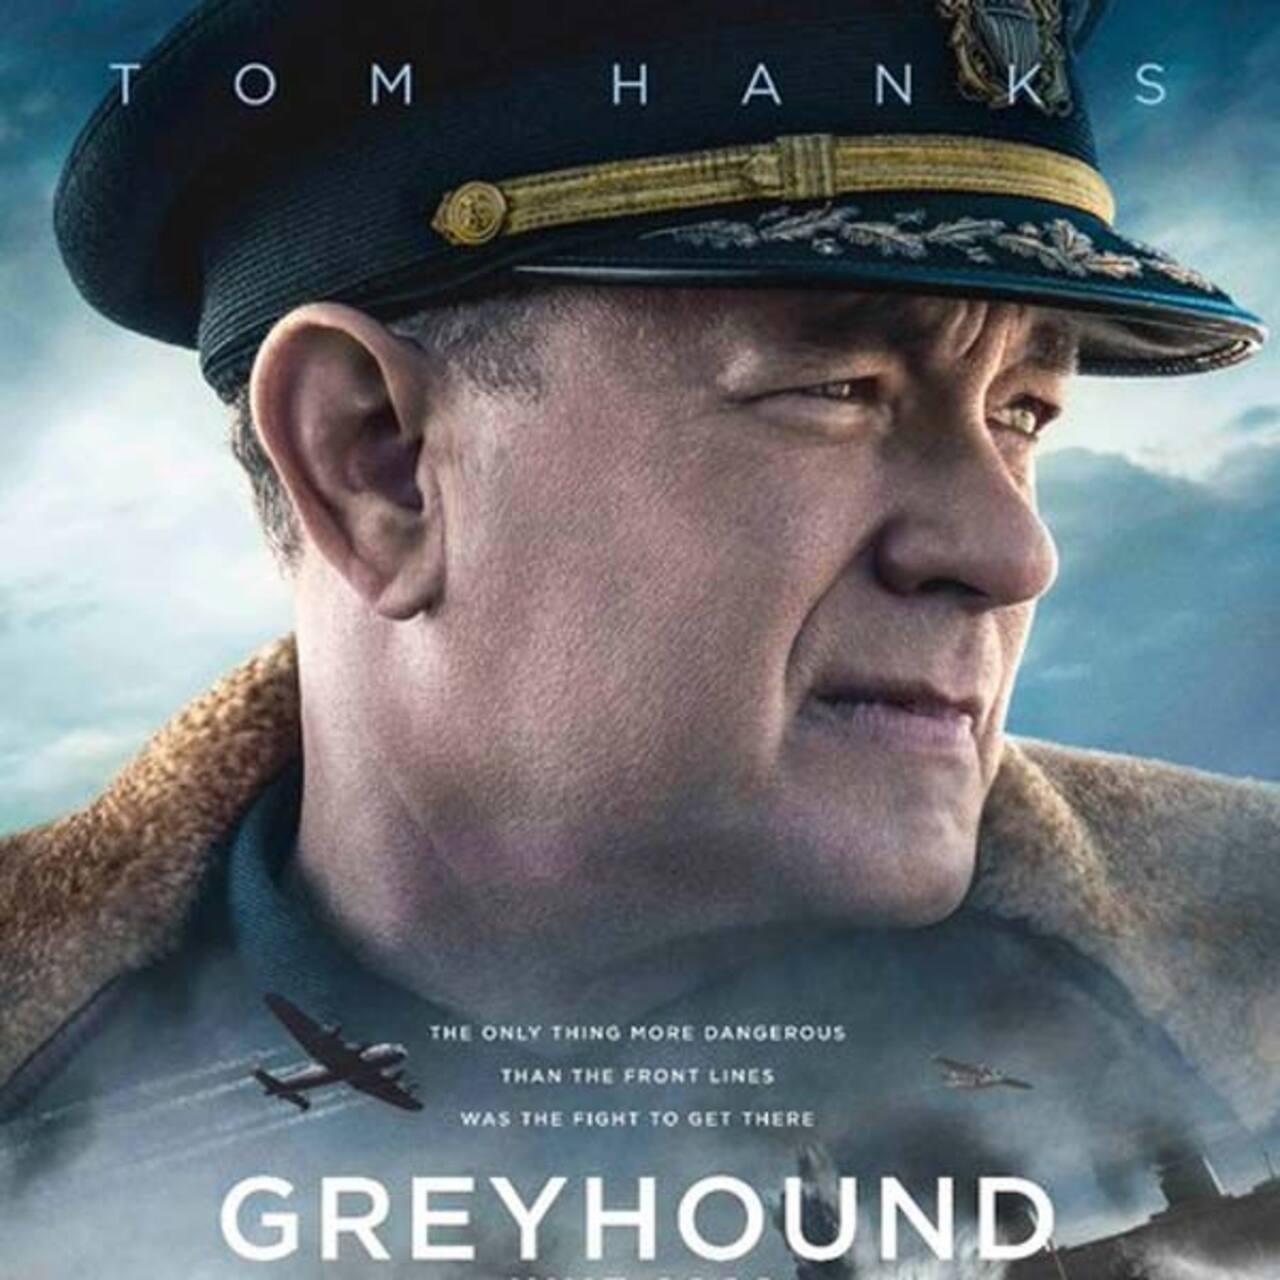 Greyhound Trailer OUT: Coronavirus से जूझ रहे हैं Tom Hanks, मेकर्स ने रिलीज कर दिया फिल्म का ट्रेलर